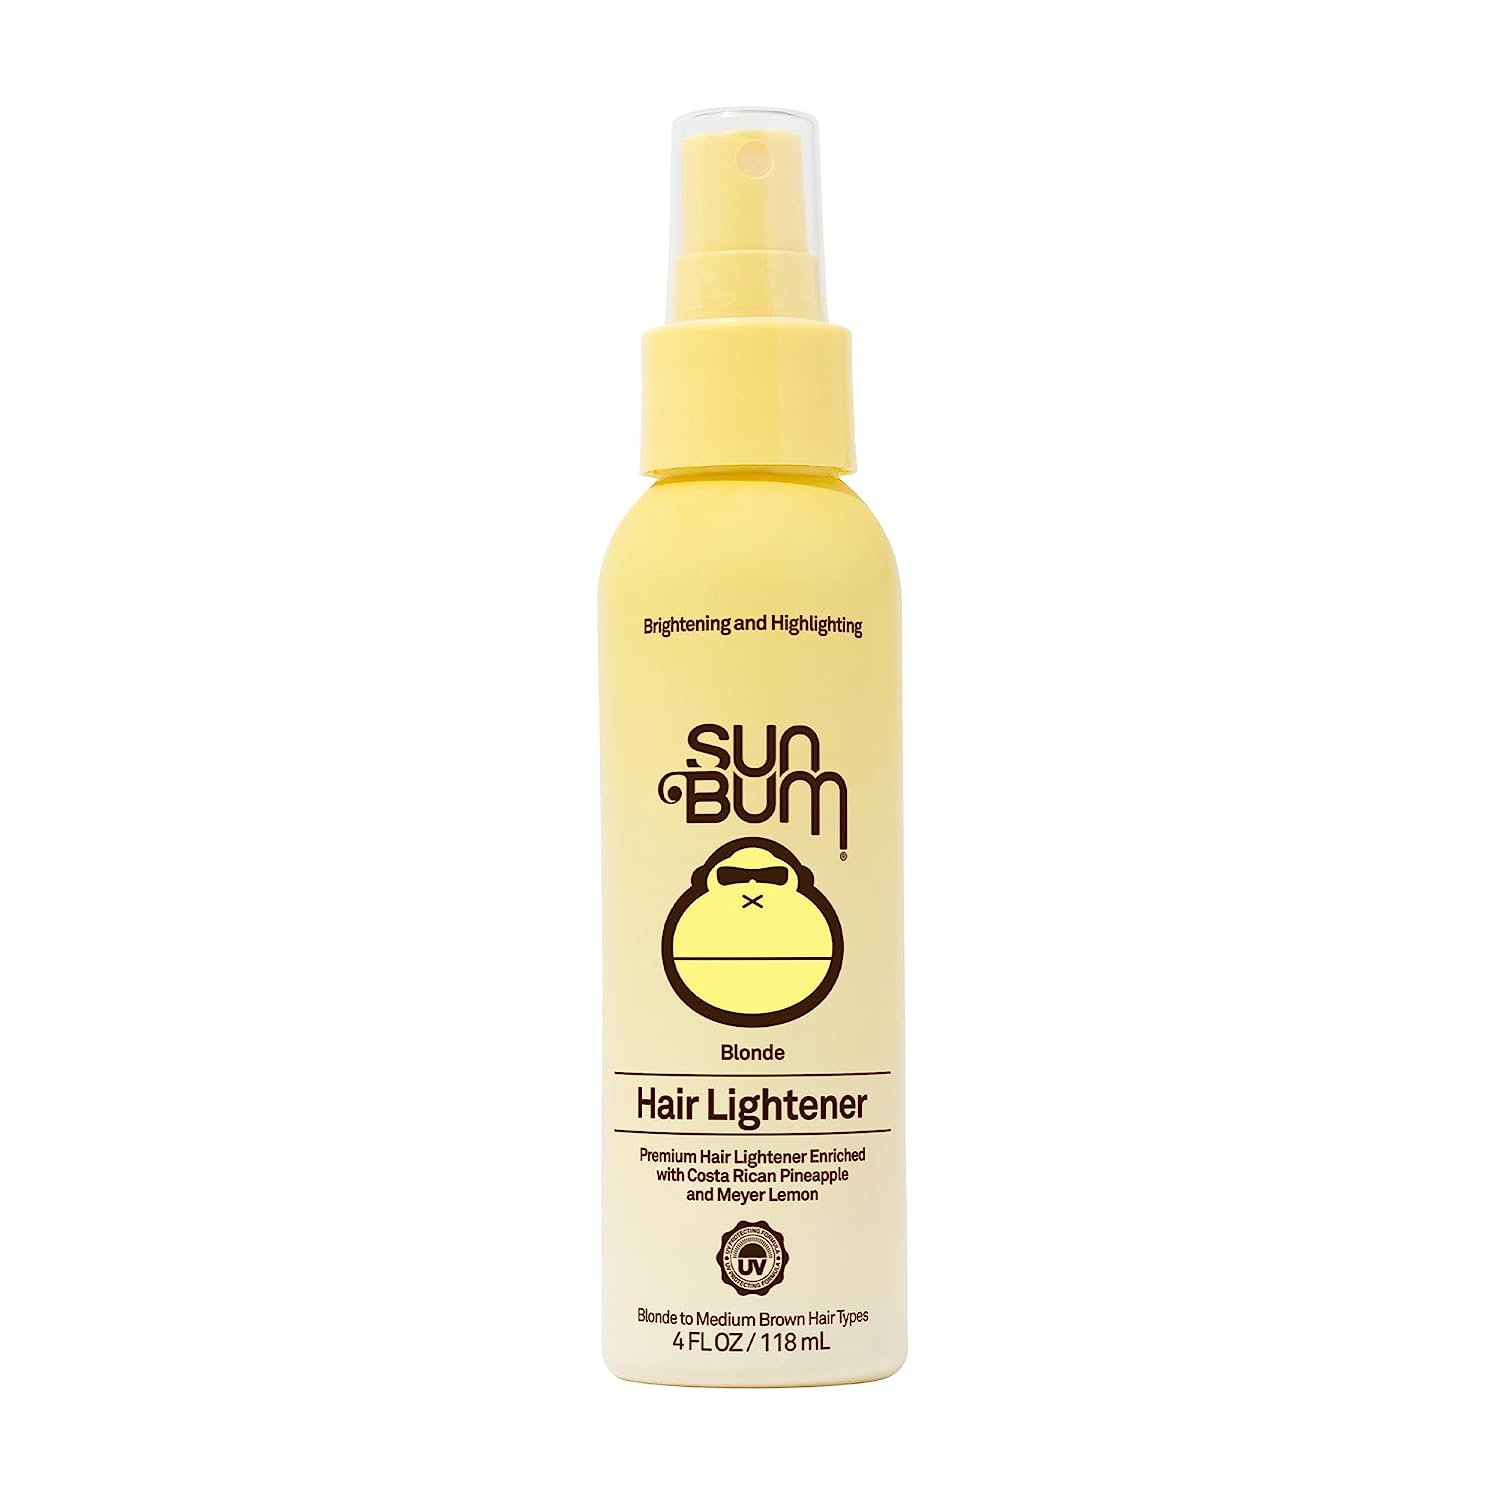 Sun Bum Blonde Formula Hair Lightener, 4 oz Spray [...]